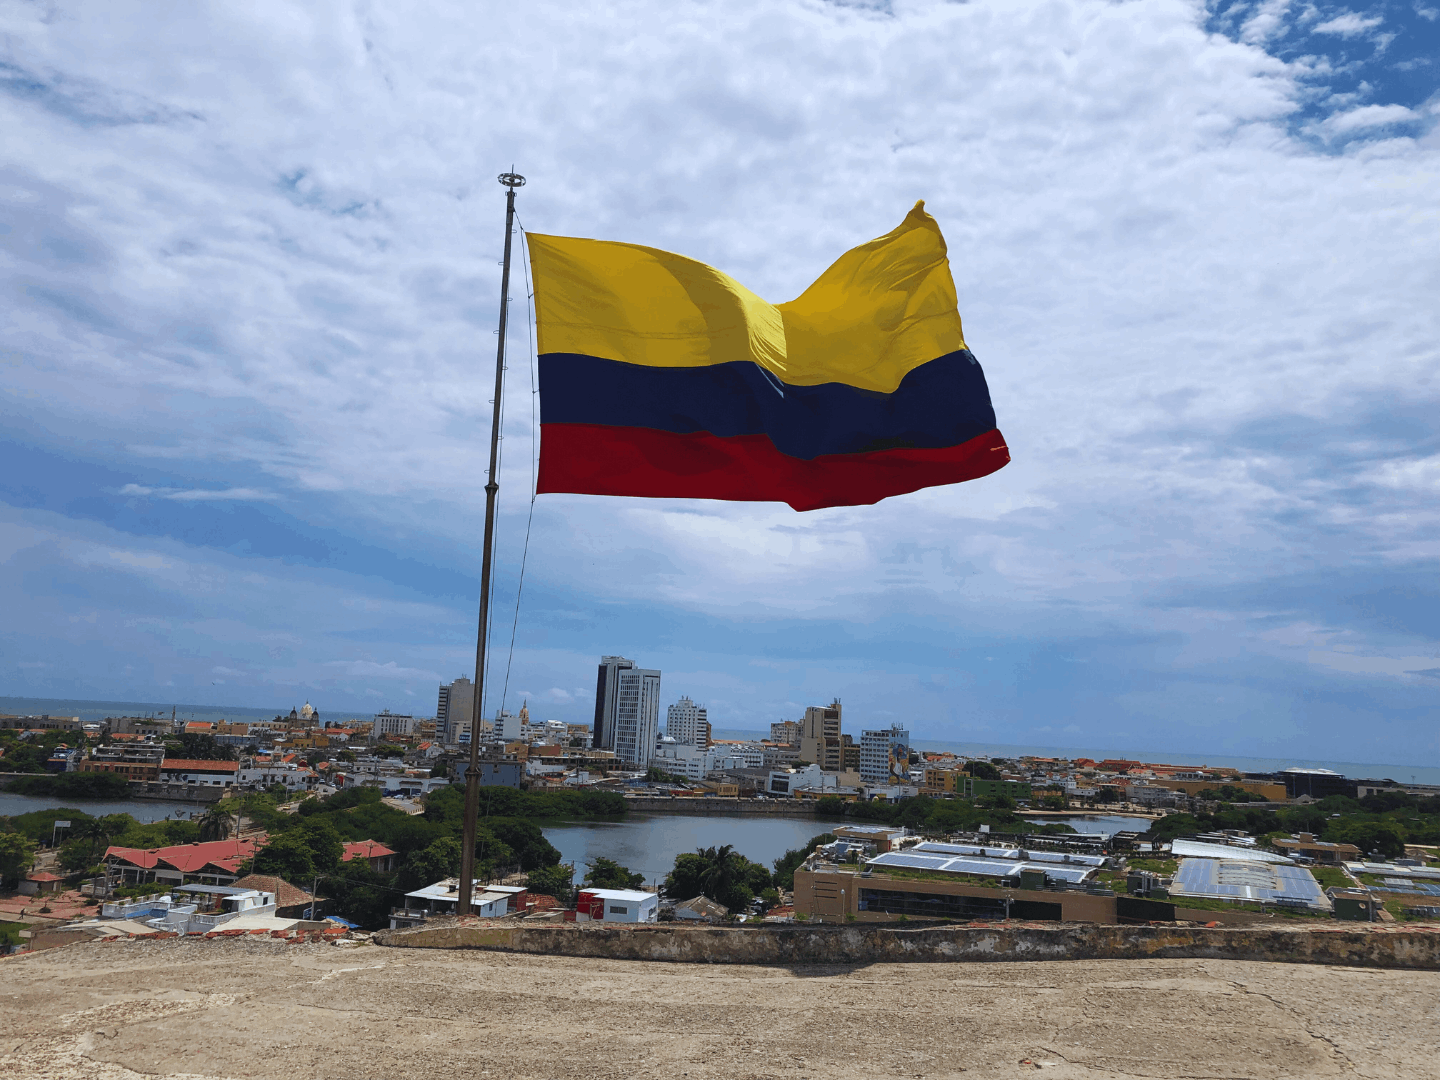 Ultimi momenti a Cartagena, fine dell'esperienza e l'inizio dei ricordi